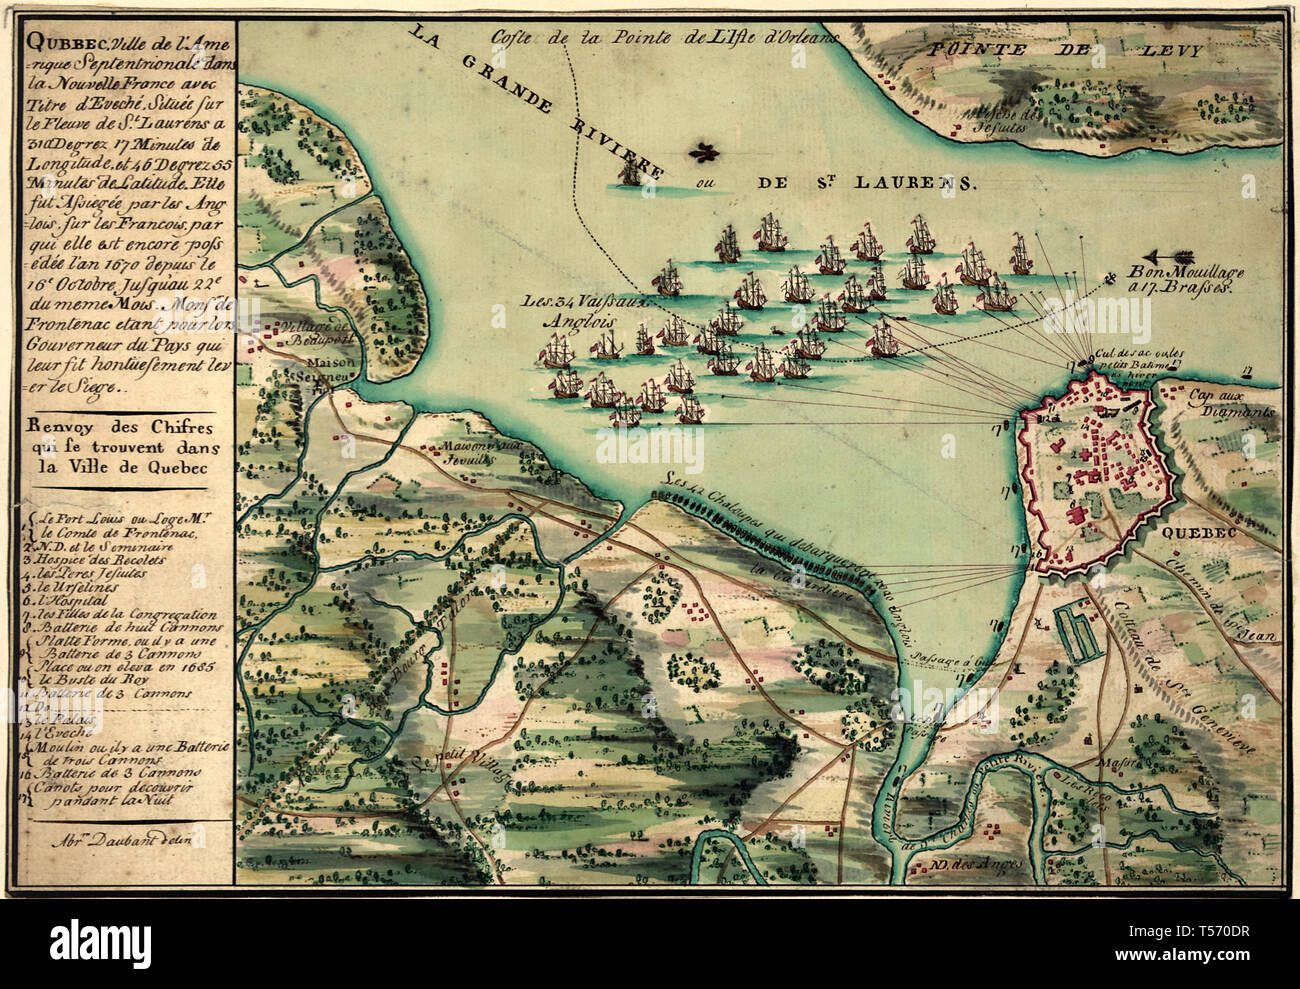 Zeigt die Belagerung der Stadt Quebec in 1670. Mit Norden nach links ausgerichtet. Stockfoto